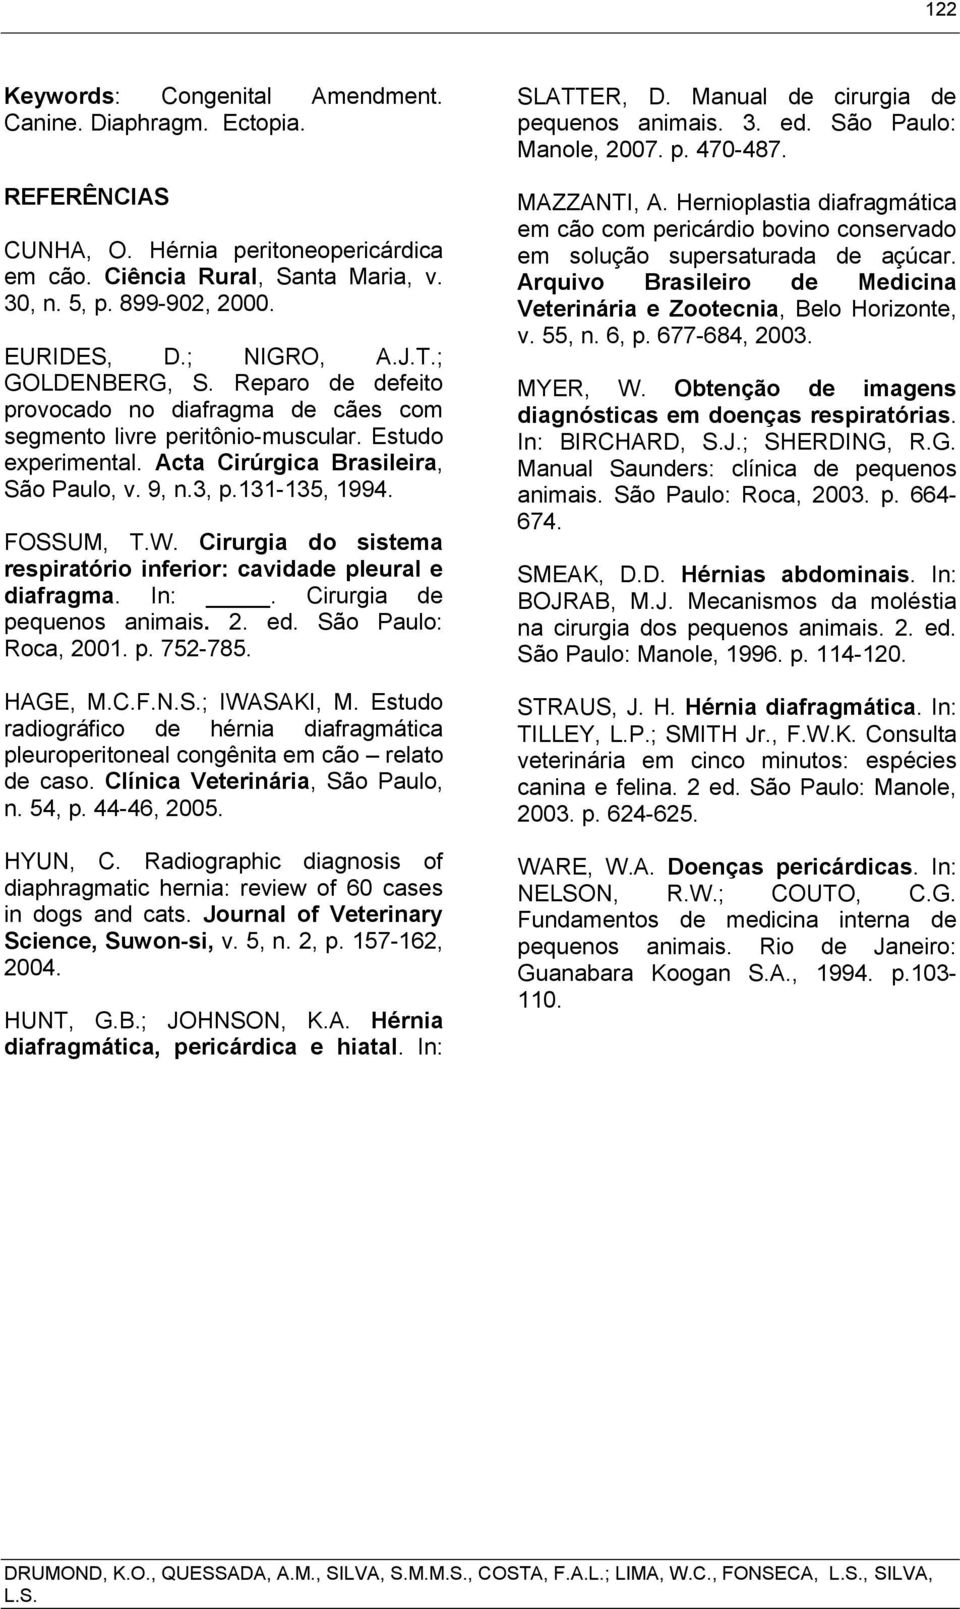 131-135, 1994. FOSSUM, T.W. Cirurgia do sistema respiratório inferior: cavidade pleural e diafragma. In:. Cirurgia de pequenos animais. 2. ed. São Paulo: Roca, 2001. p. 752-785. HAGE, M.C.F.N.S.; IWASAKI, M.